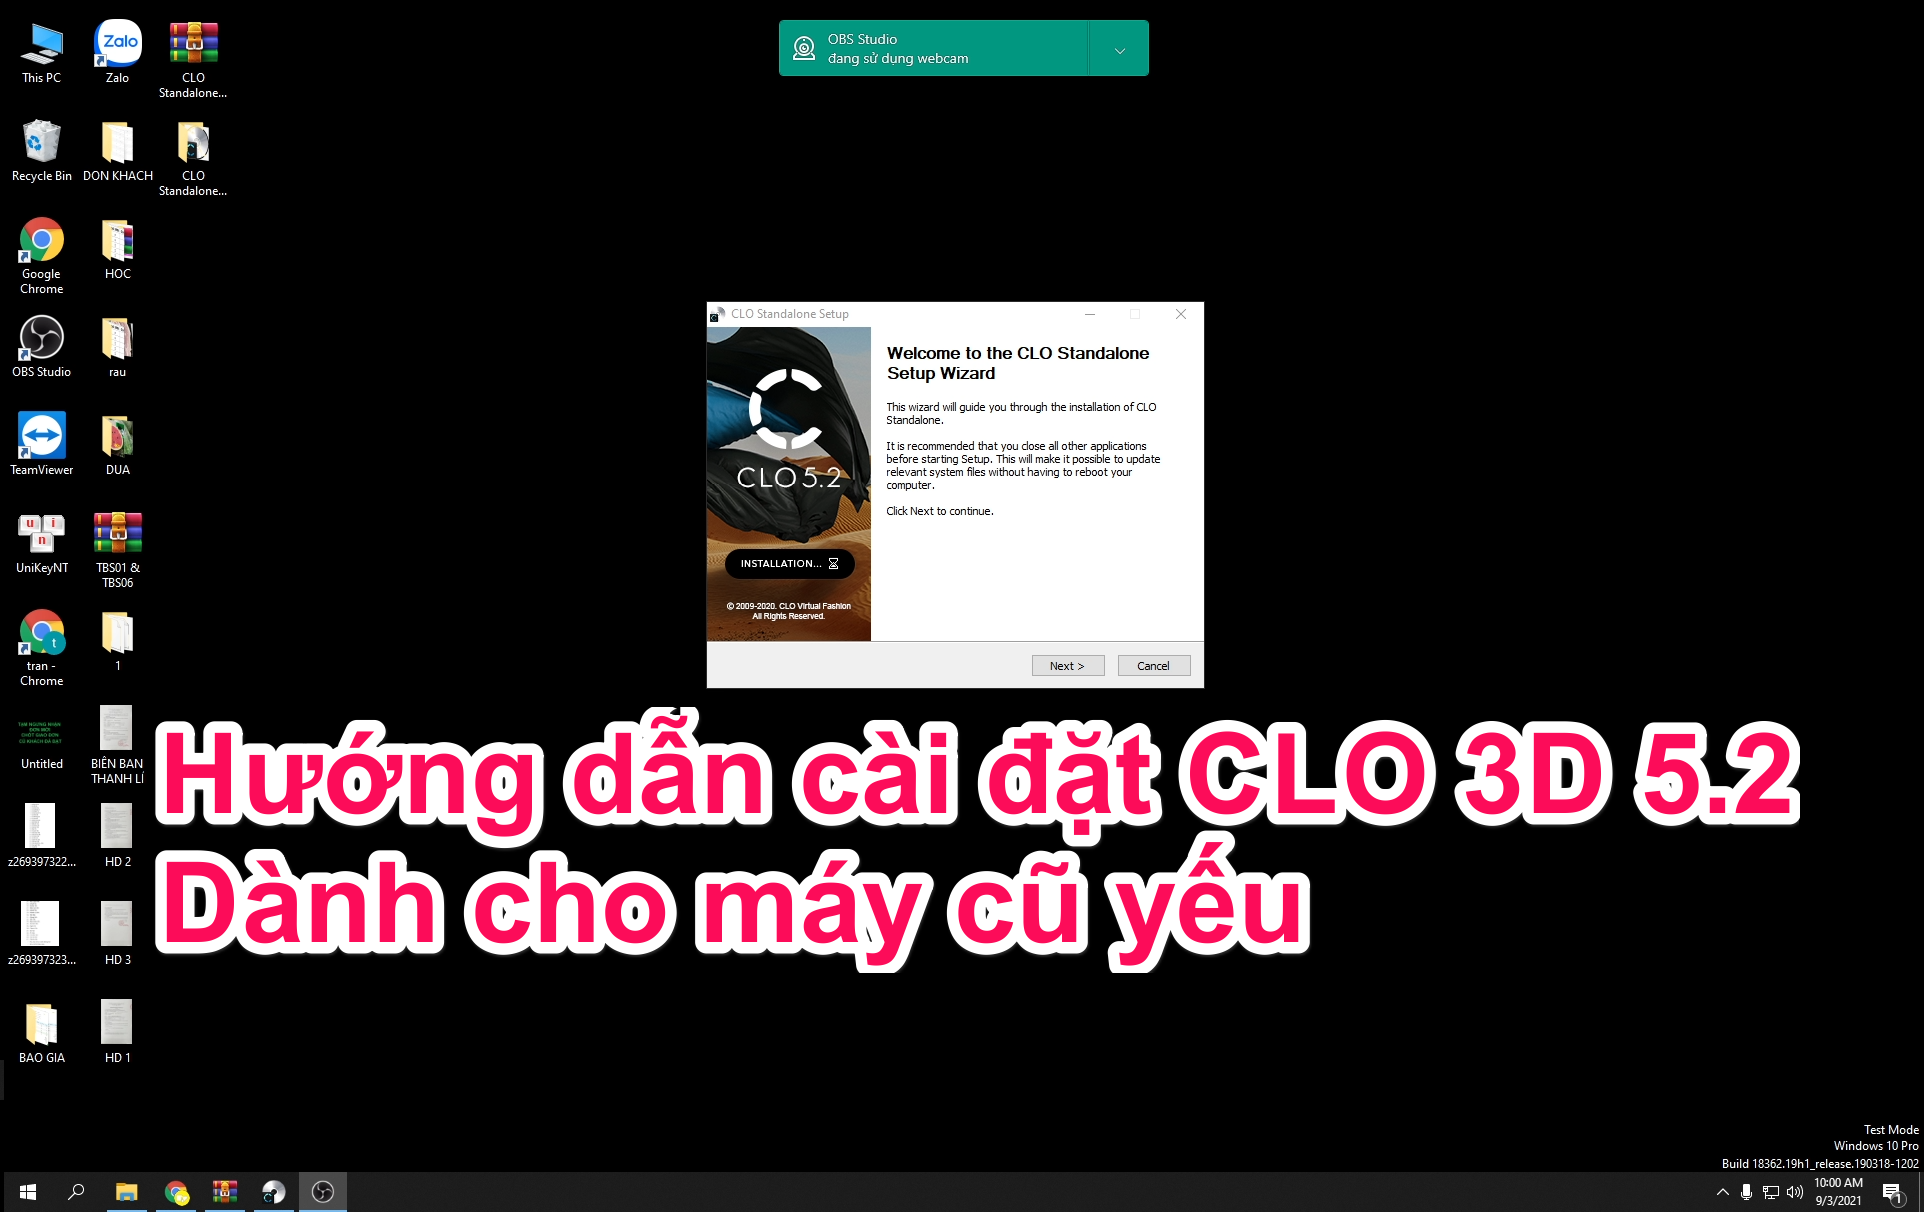 clo3d 5.2